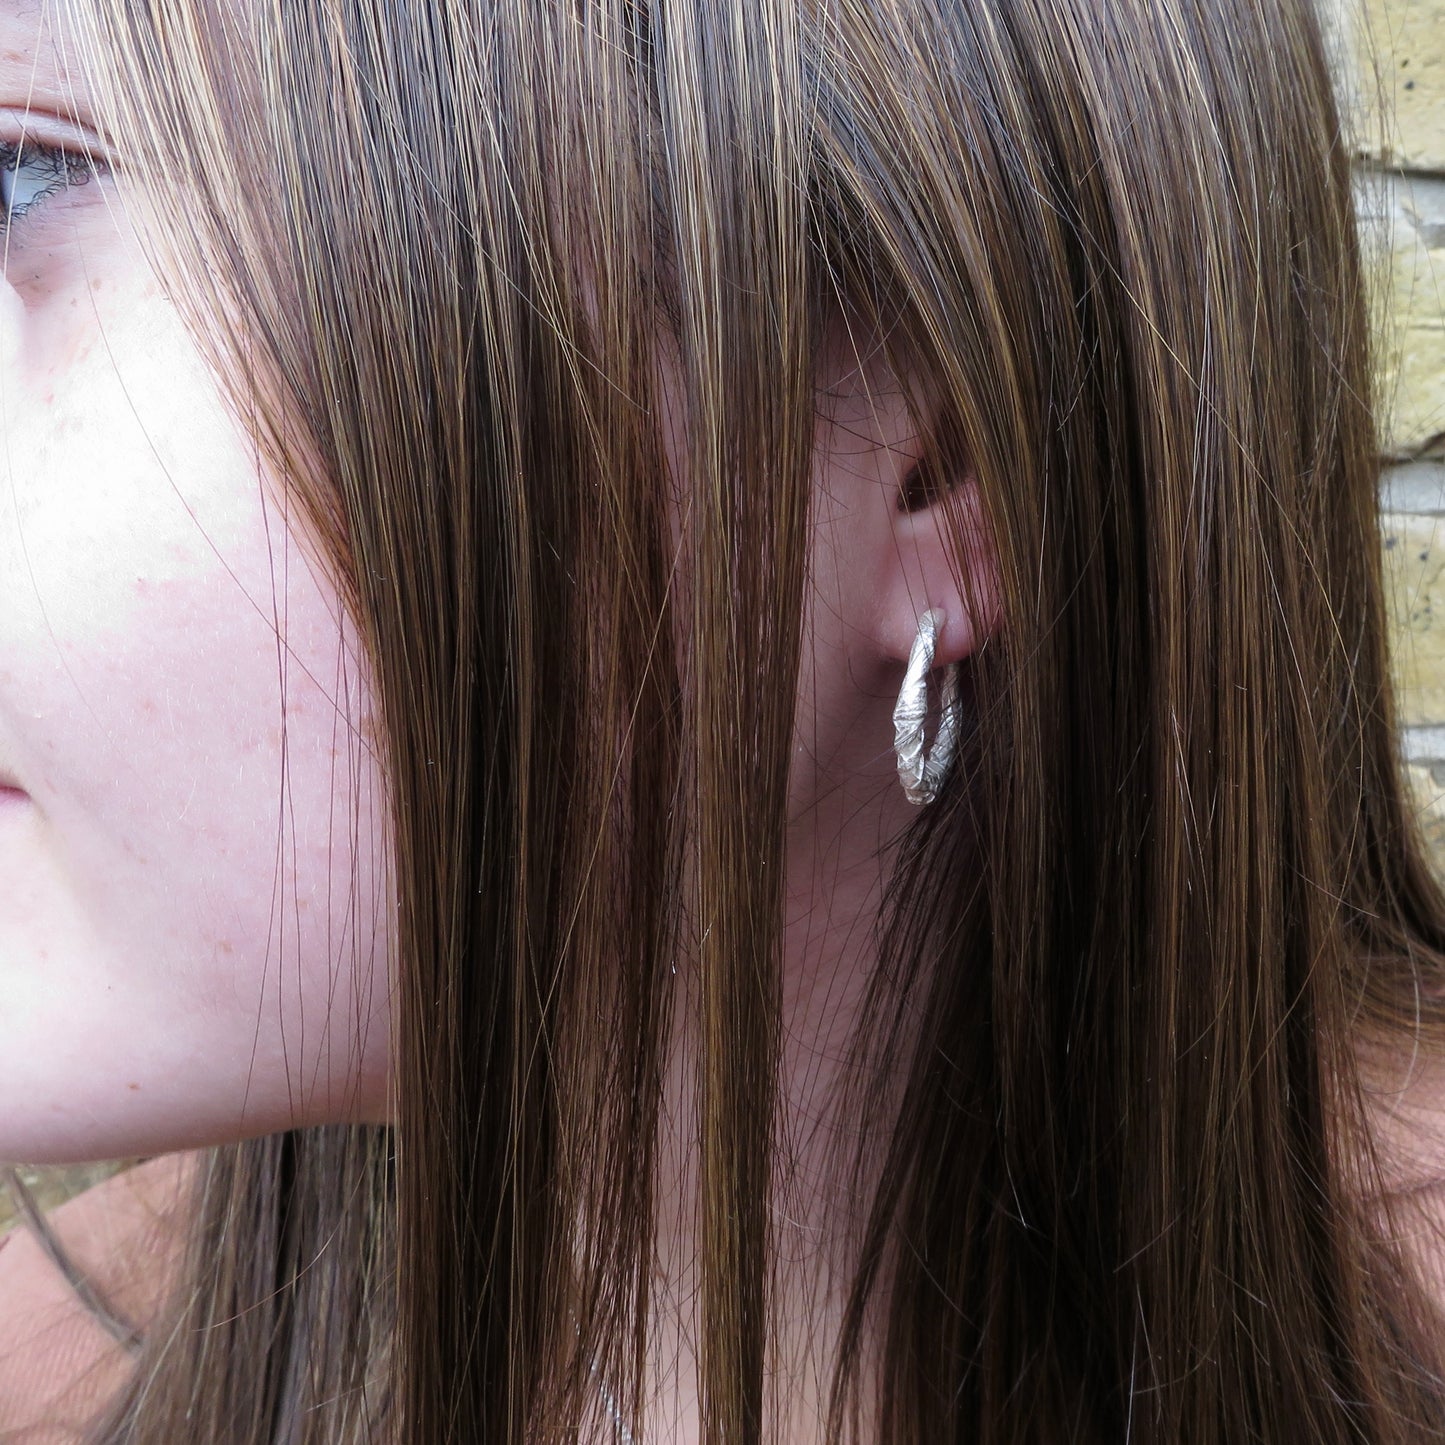 Woven earrings